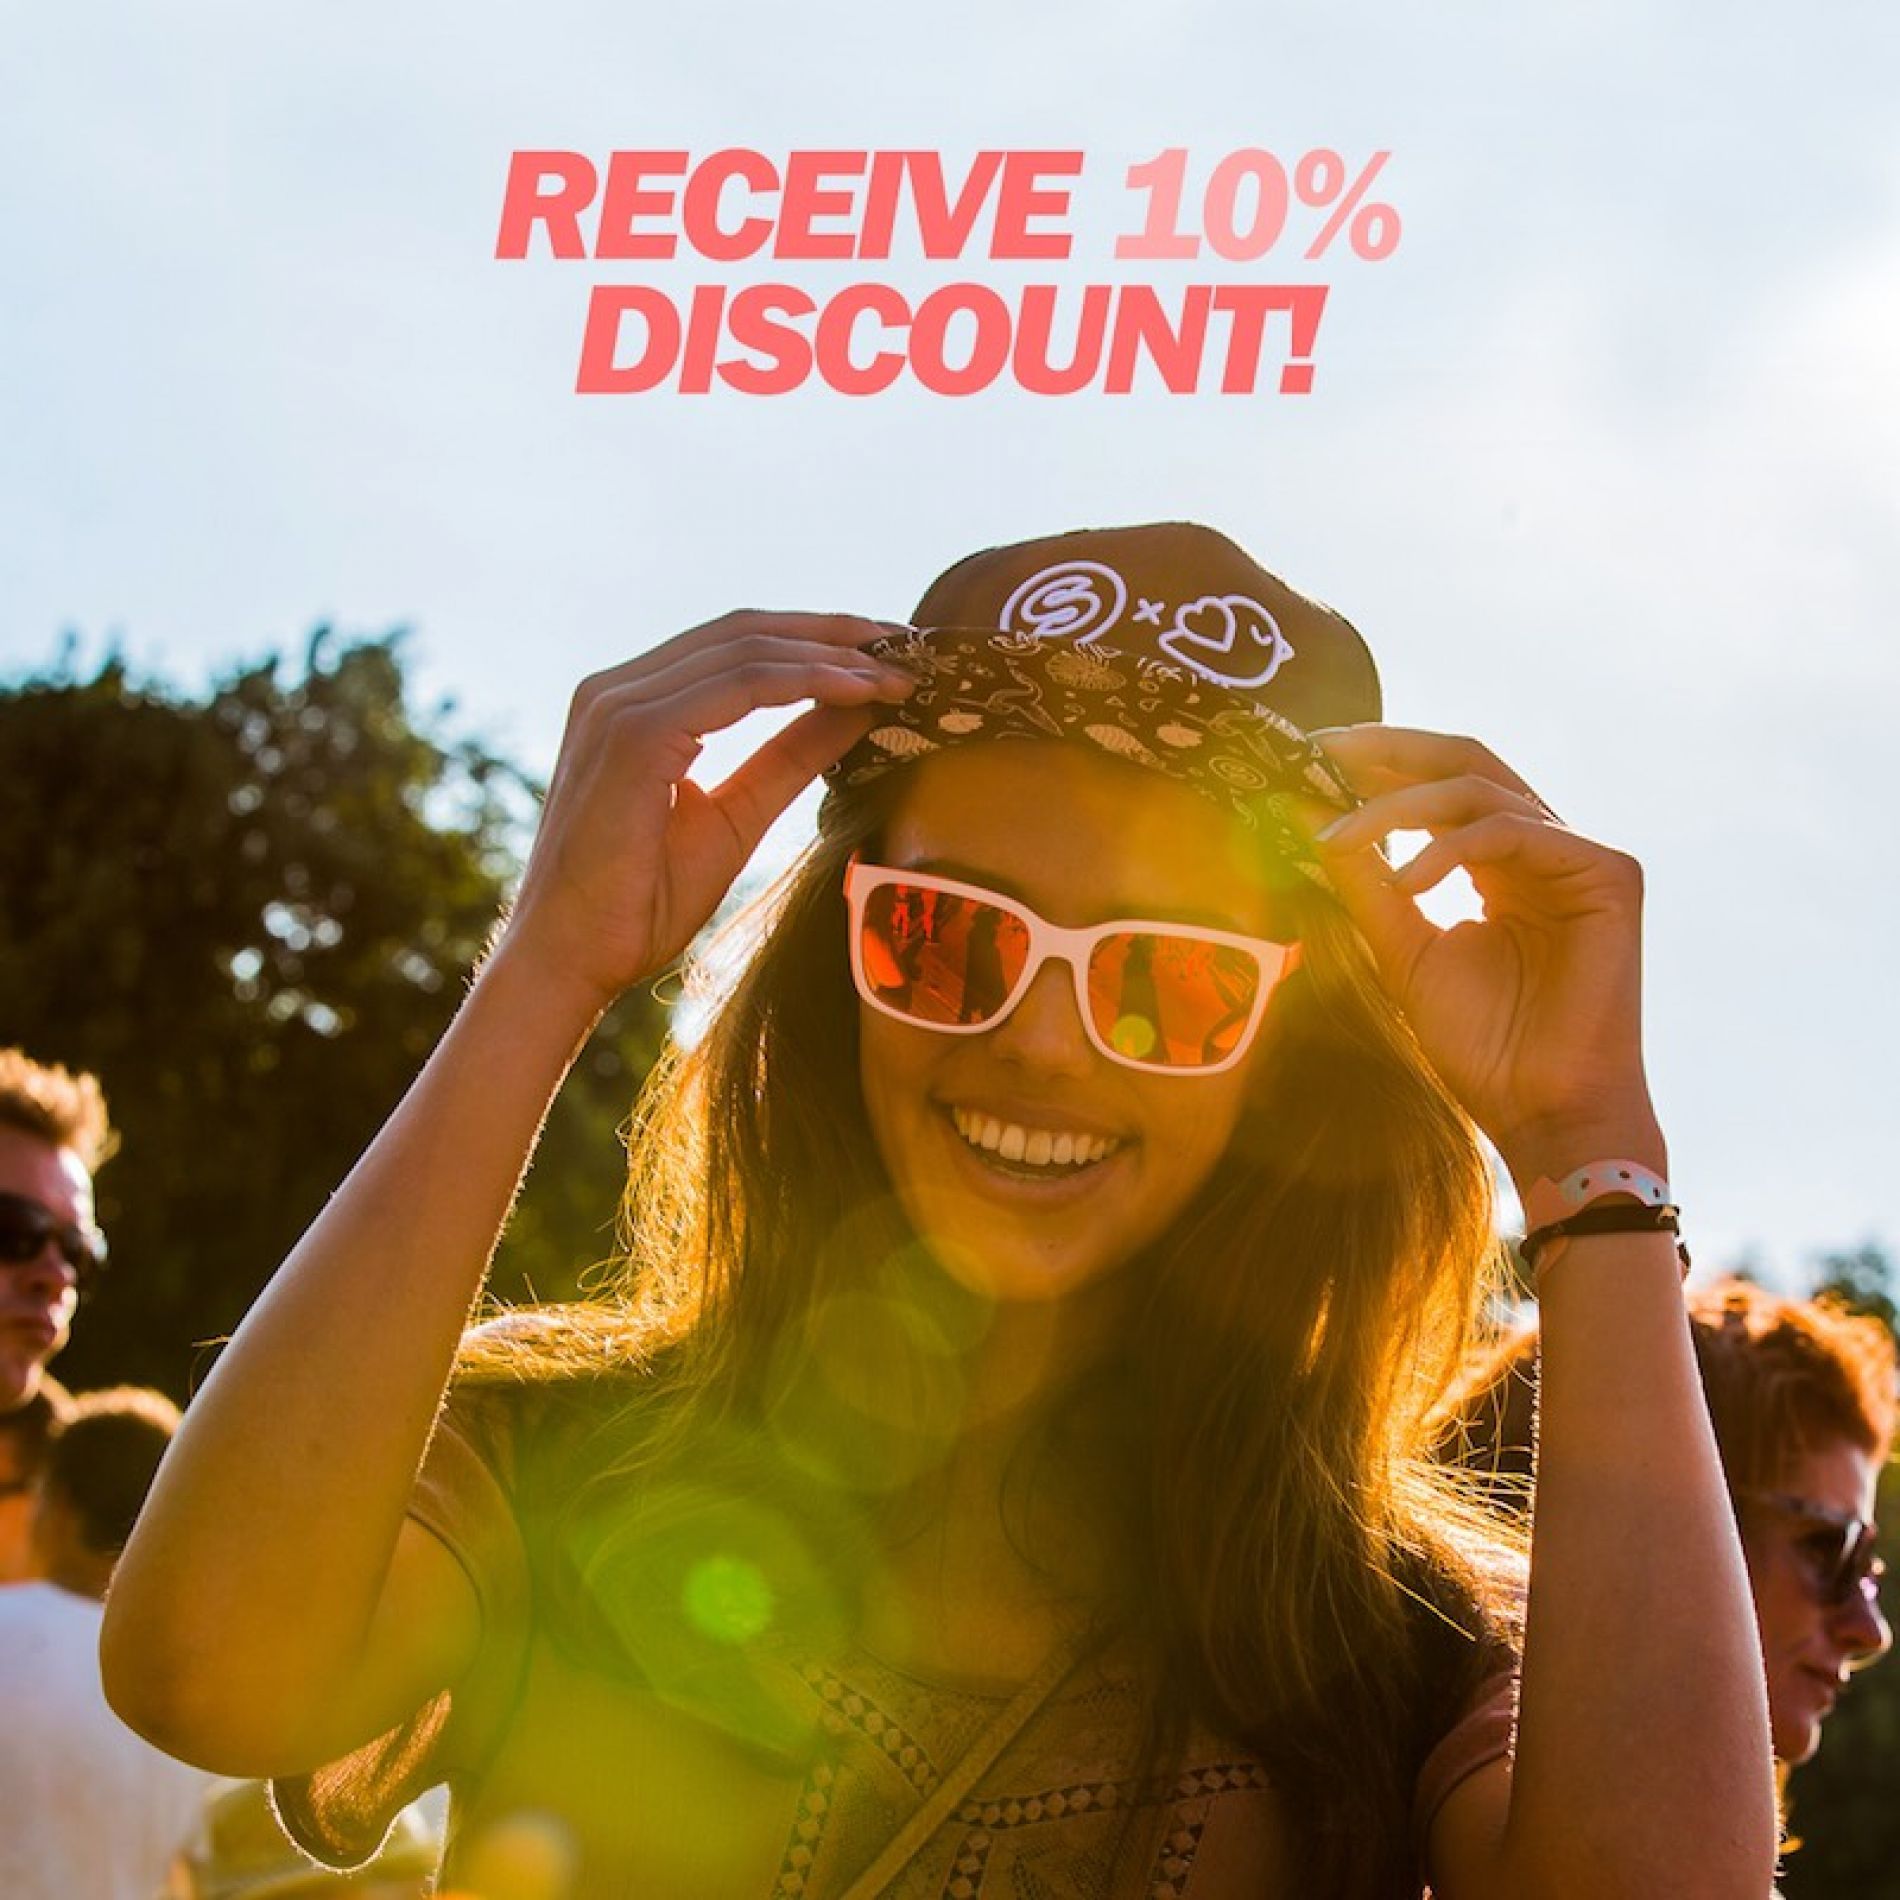 Receive 10% discount on Spinnin’ x Sinner shades!